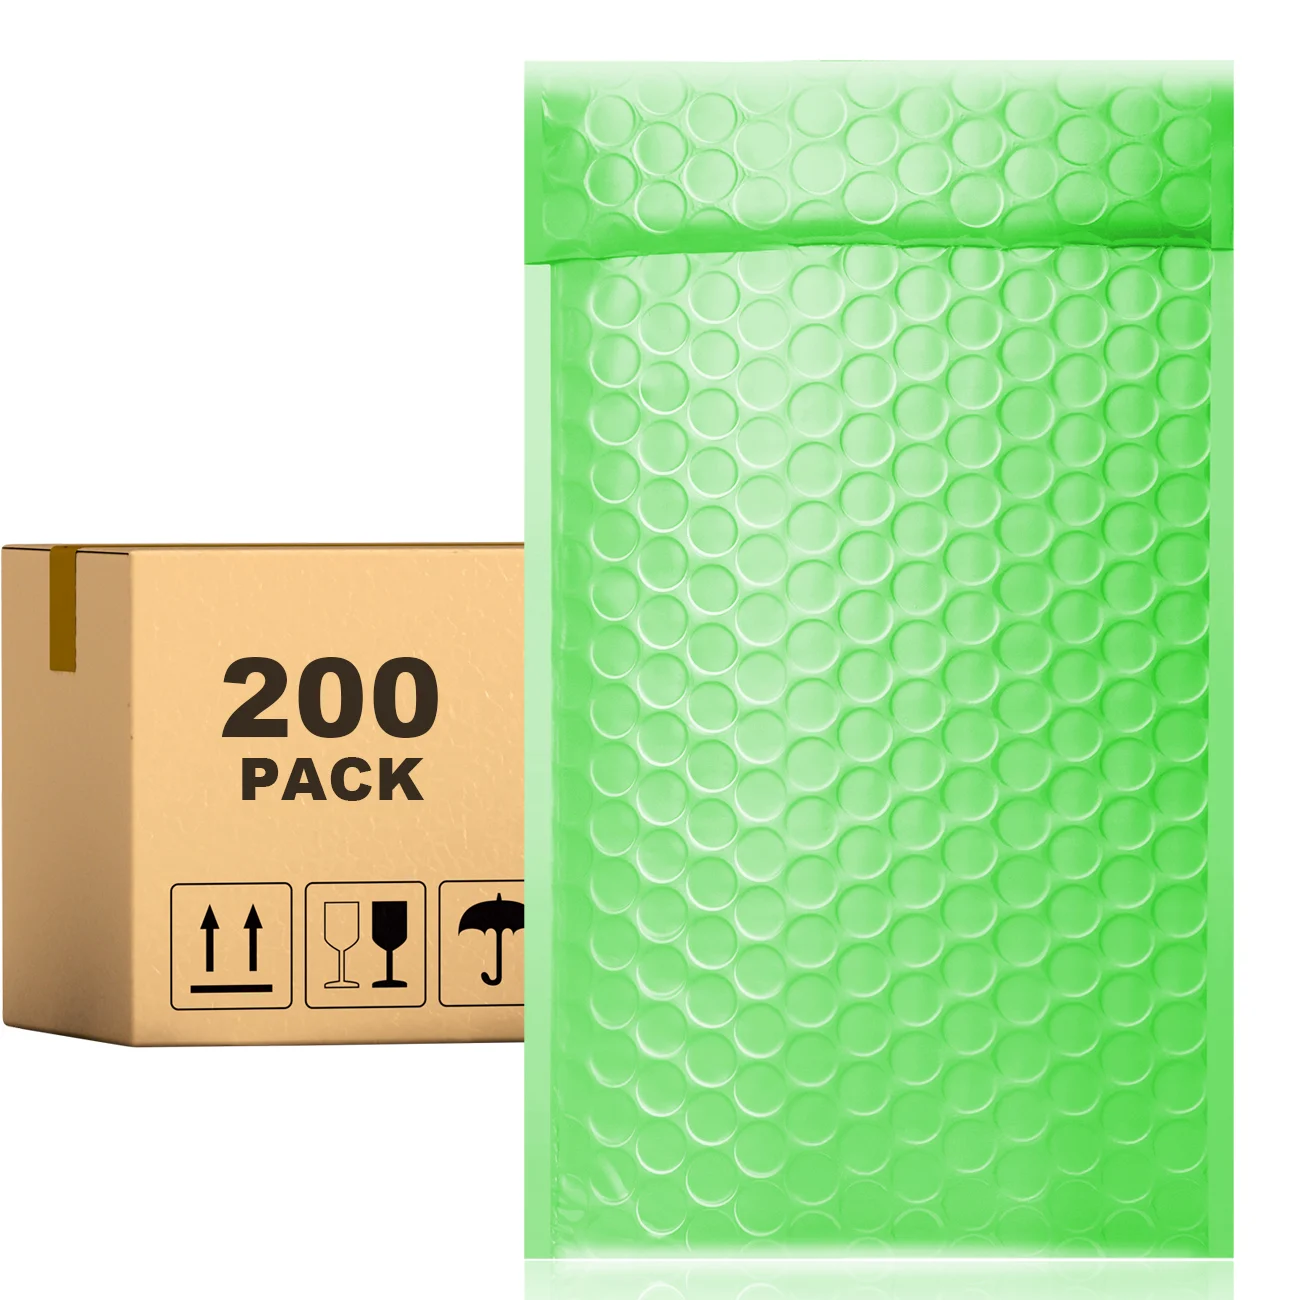 

Конверты PACKAPRO с полиэтиленовыми пузырьками, 7x10 зеленых вкладышей, 200 шт. для упаковки, отправки, доставки